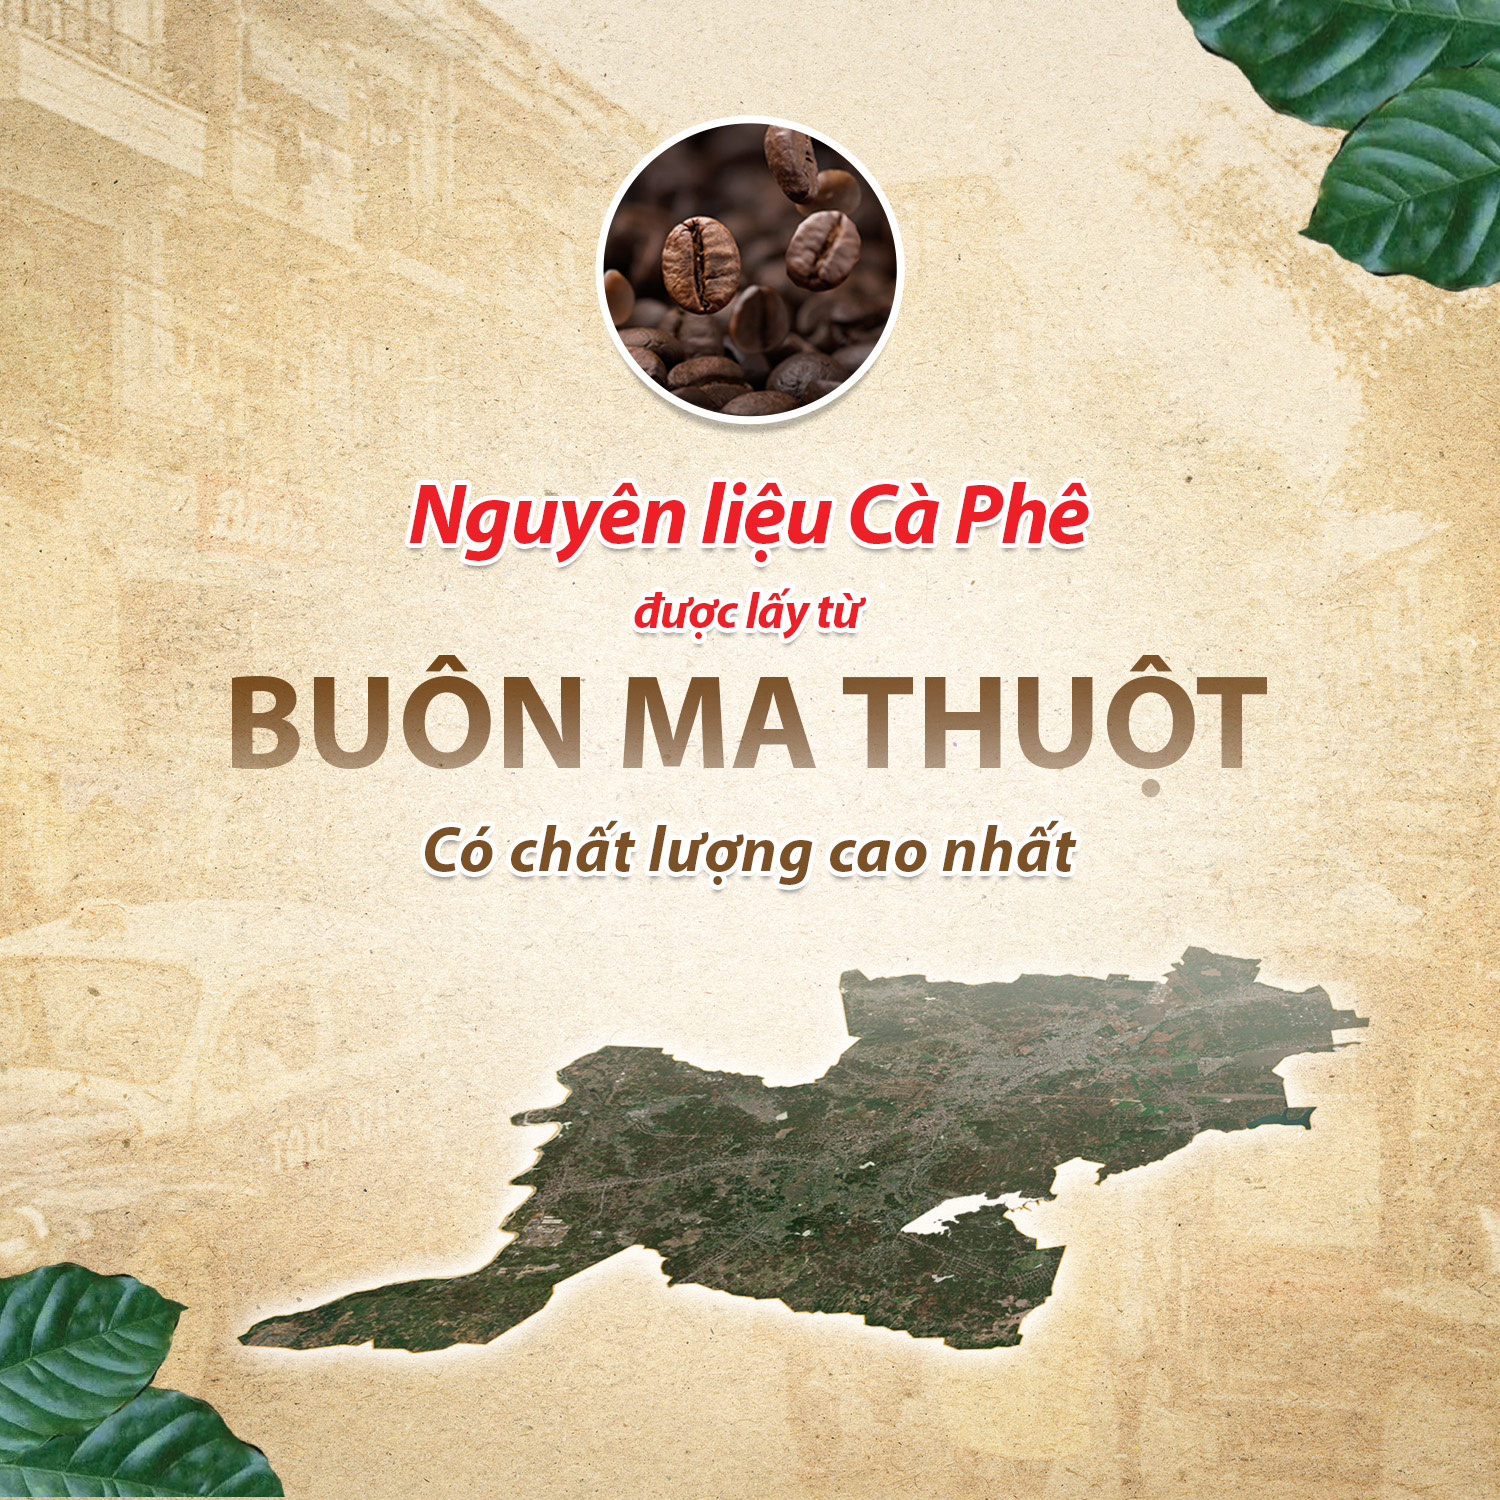 Cà Phê Sữa Rang Xay Hòa Tan 3IN1 LOVE’IN SAIGON CAFE - Khánh Hòa NutriFoods Thơm Ngon Hơn, Đậm Đà Hơn (Hộp 12 gói x 18g)